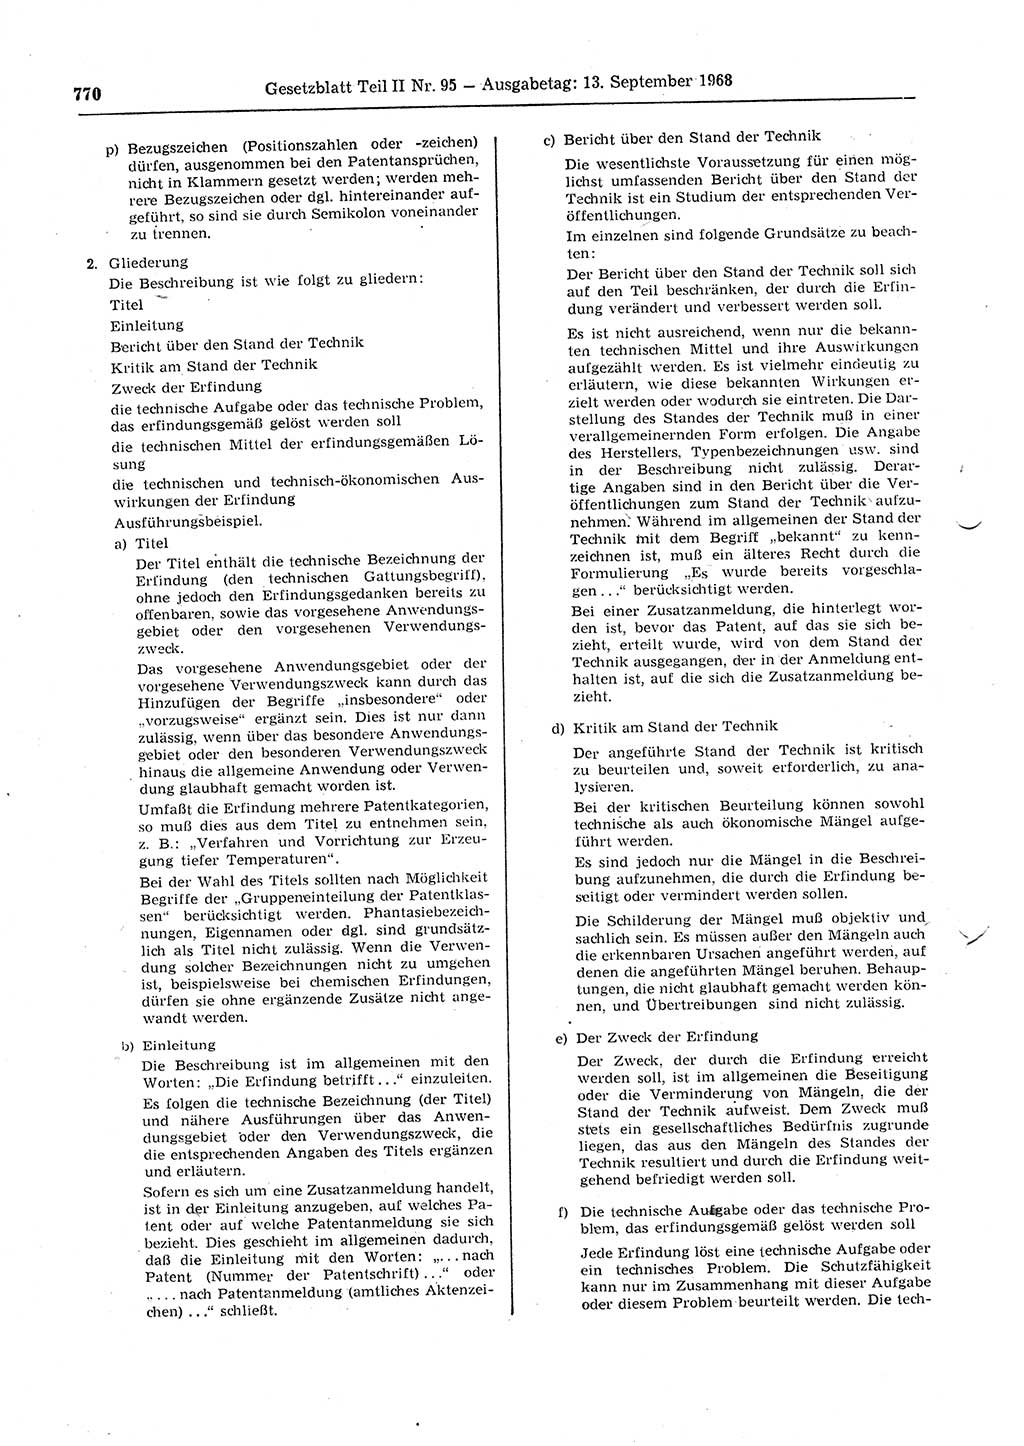 Gesetzblatt (GBl.) der Deutschen Demokratischen Republik (DDR) Teil ⅠⅠ 1968, Seite 770 (GBl. DDR ⅠⅠ 1968, S. 770)